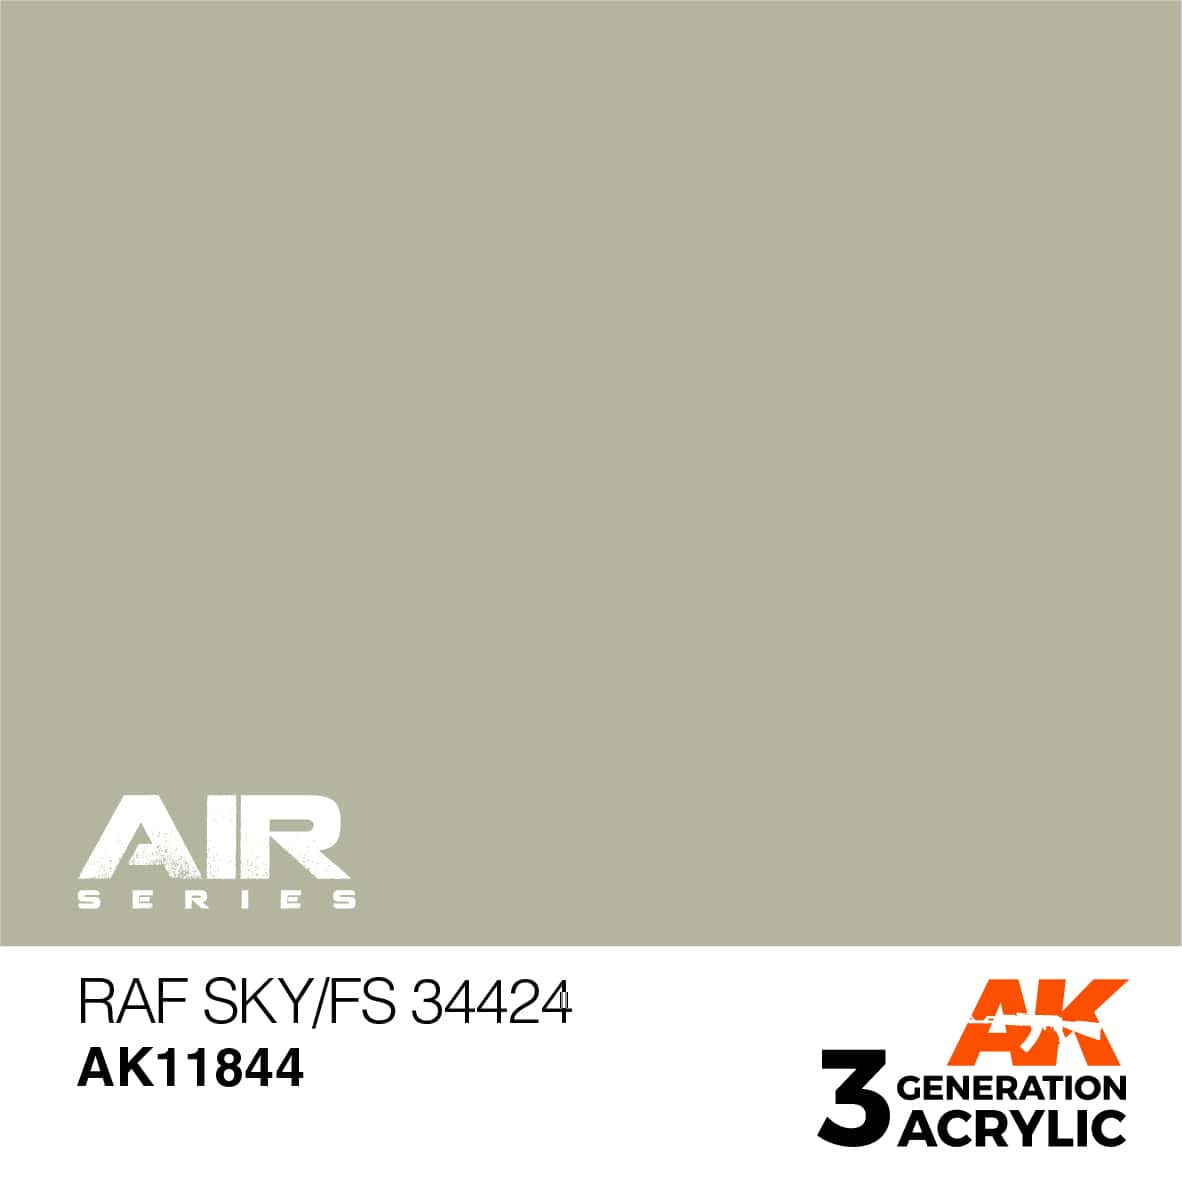 AK RAF SKY / FS 34424 – AIR 17ml